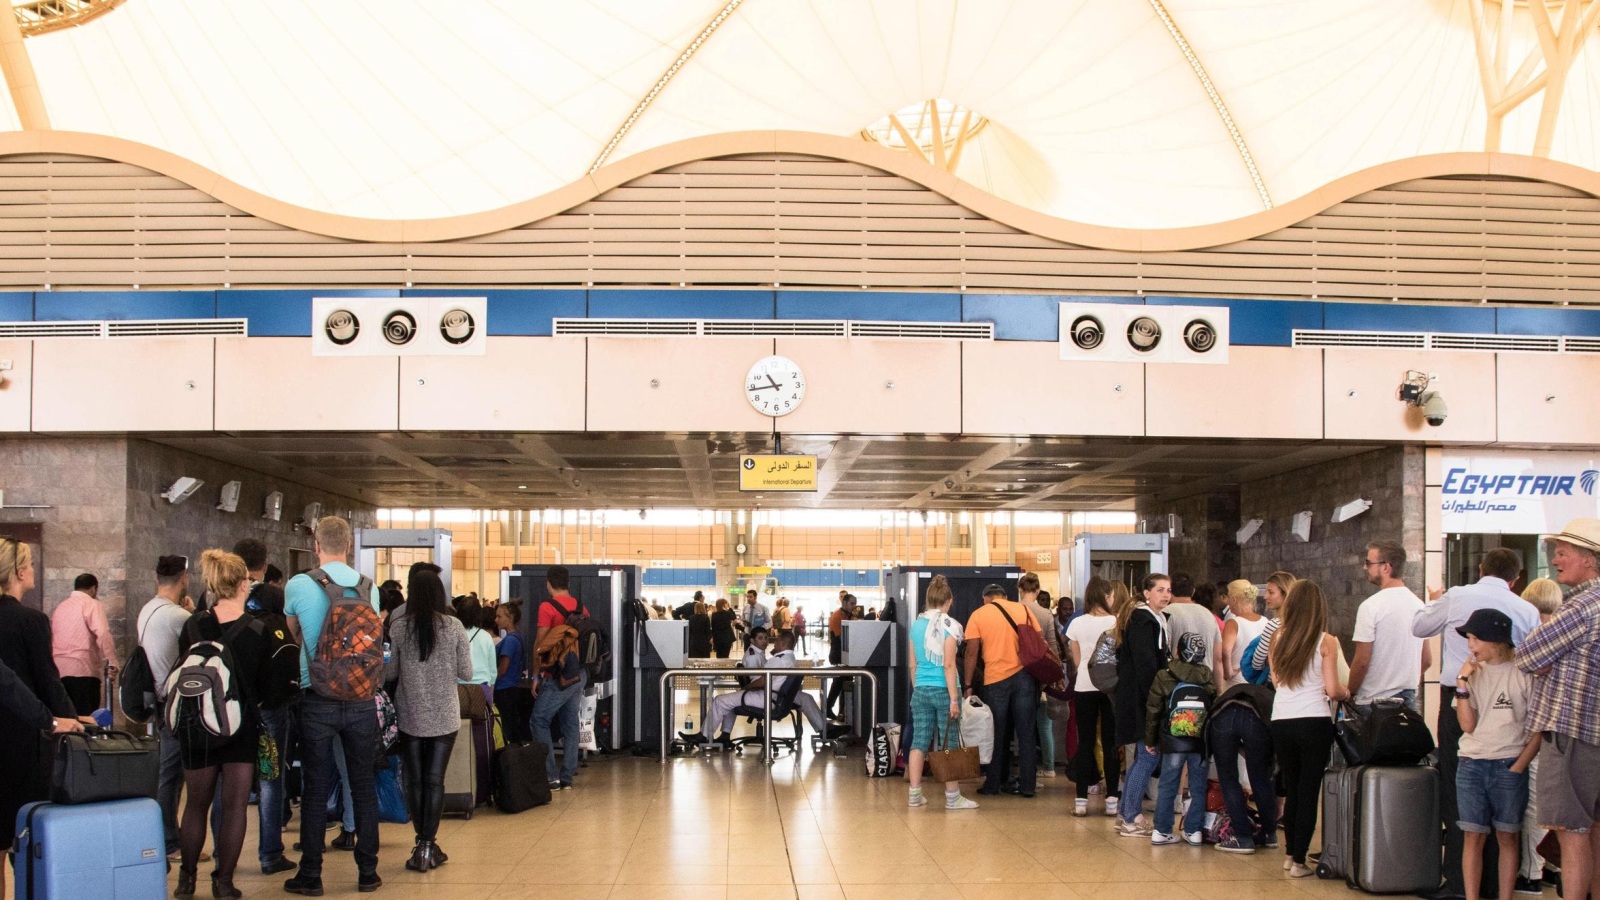 ‪سياح ينتظرون تفتيش حقائبهم بمطار شرم الشيخ قبل ركوب طائرتهم‬ (أسوشيتد برس)